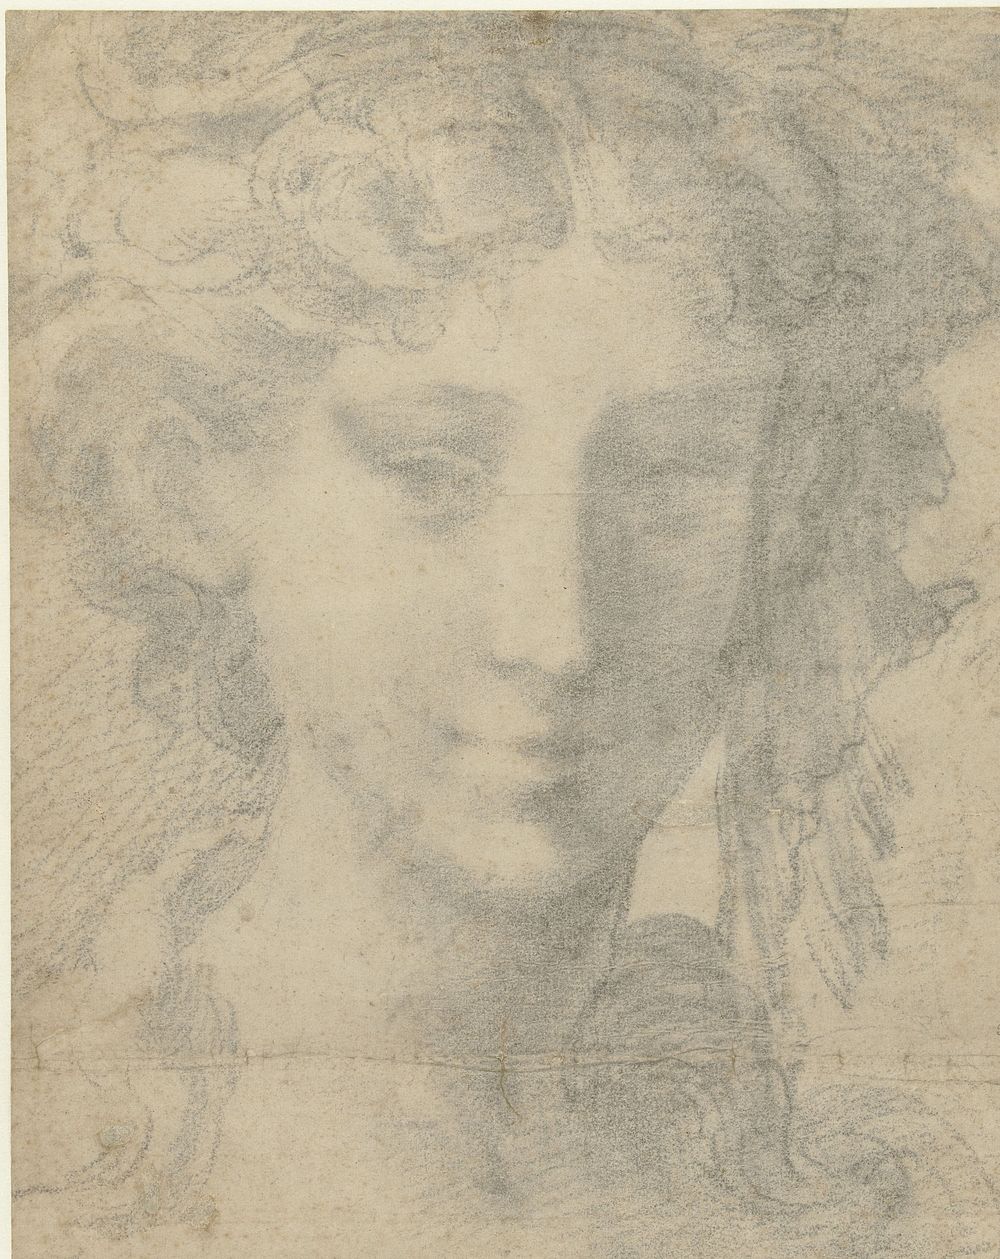 Hoofd van vrouw (1530 - 1535) by Parmigianino